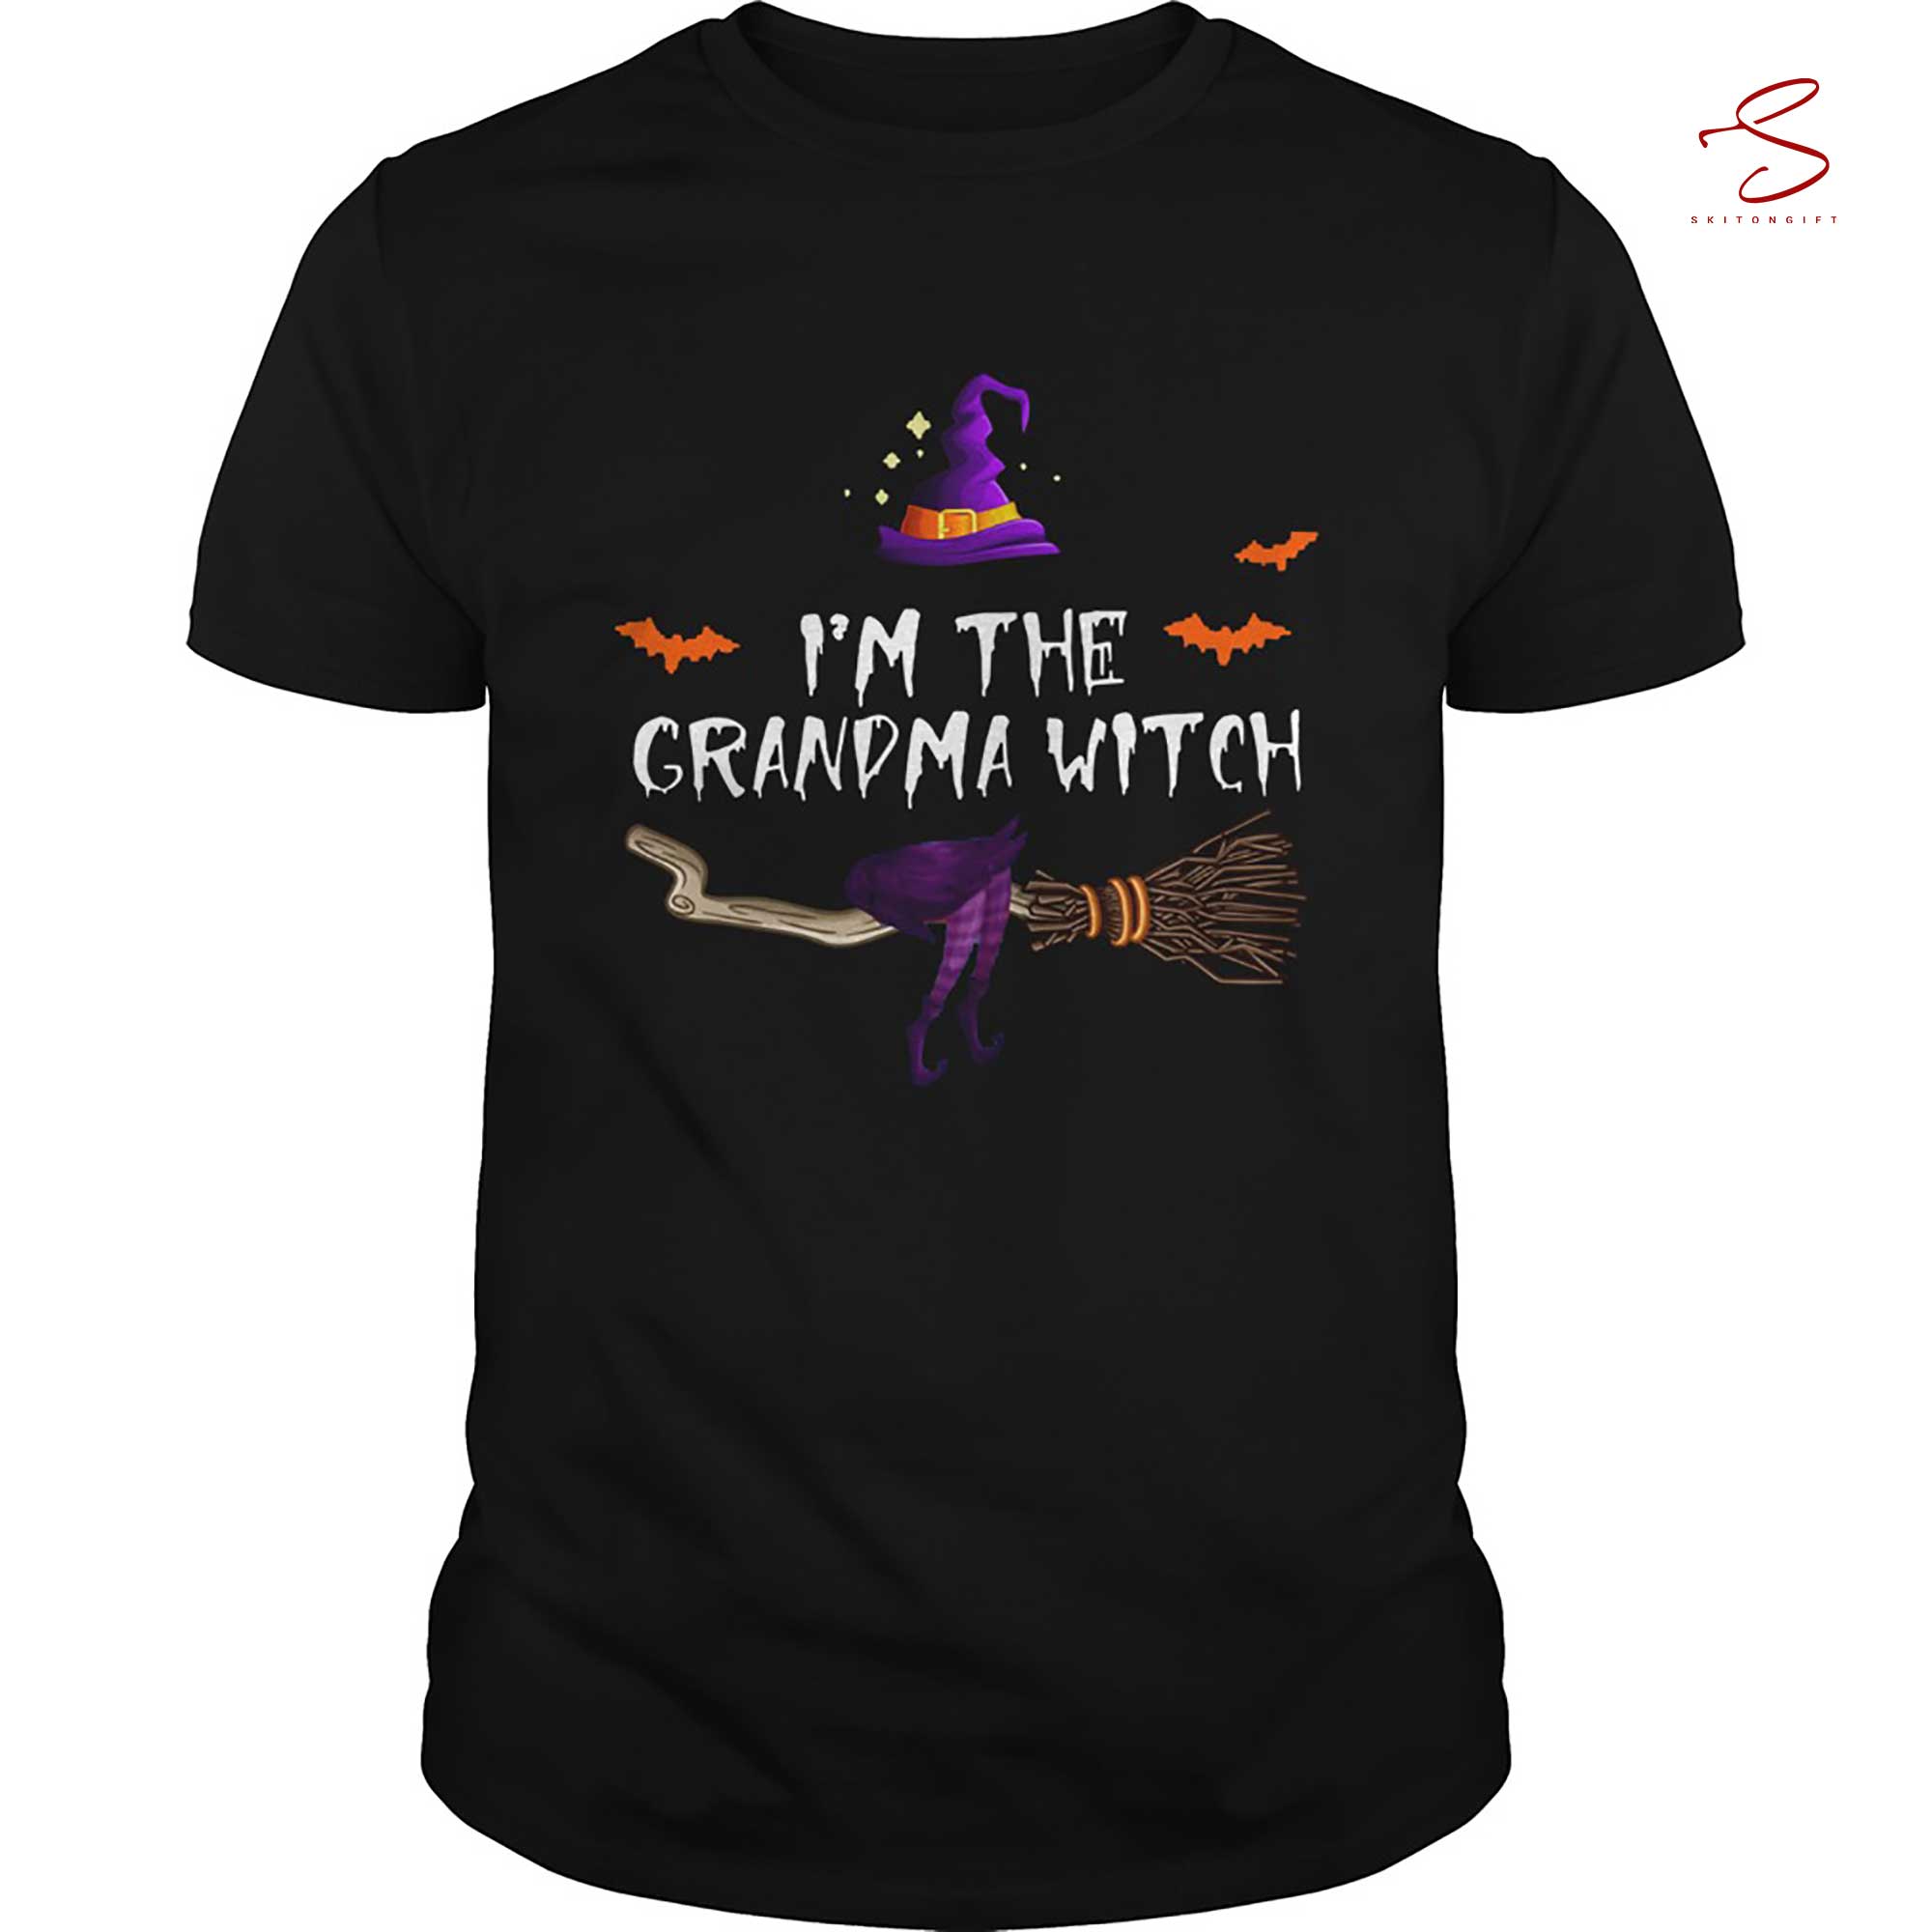 Skitongift I'm The Grandma Witch T Shirt